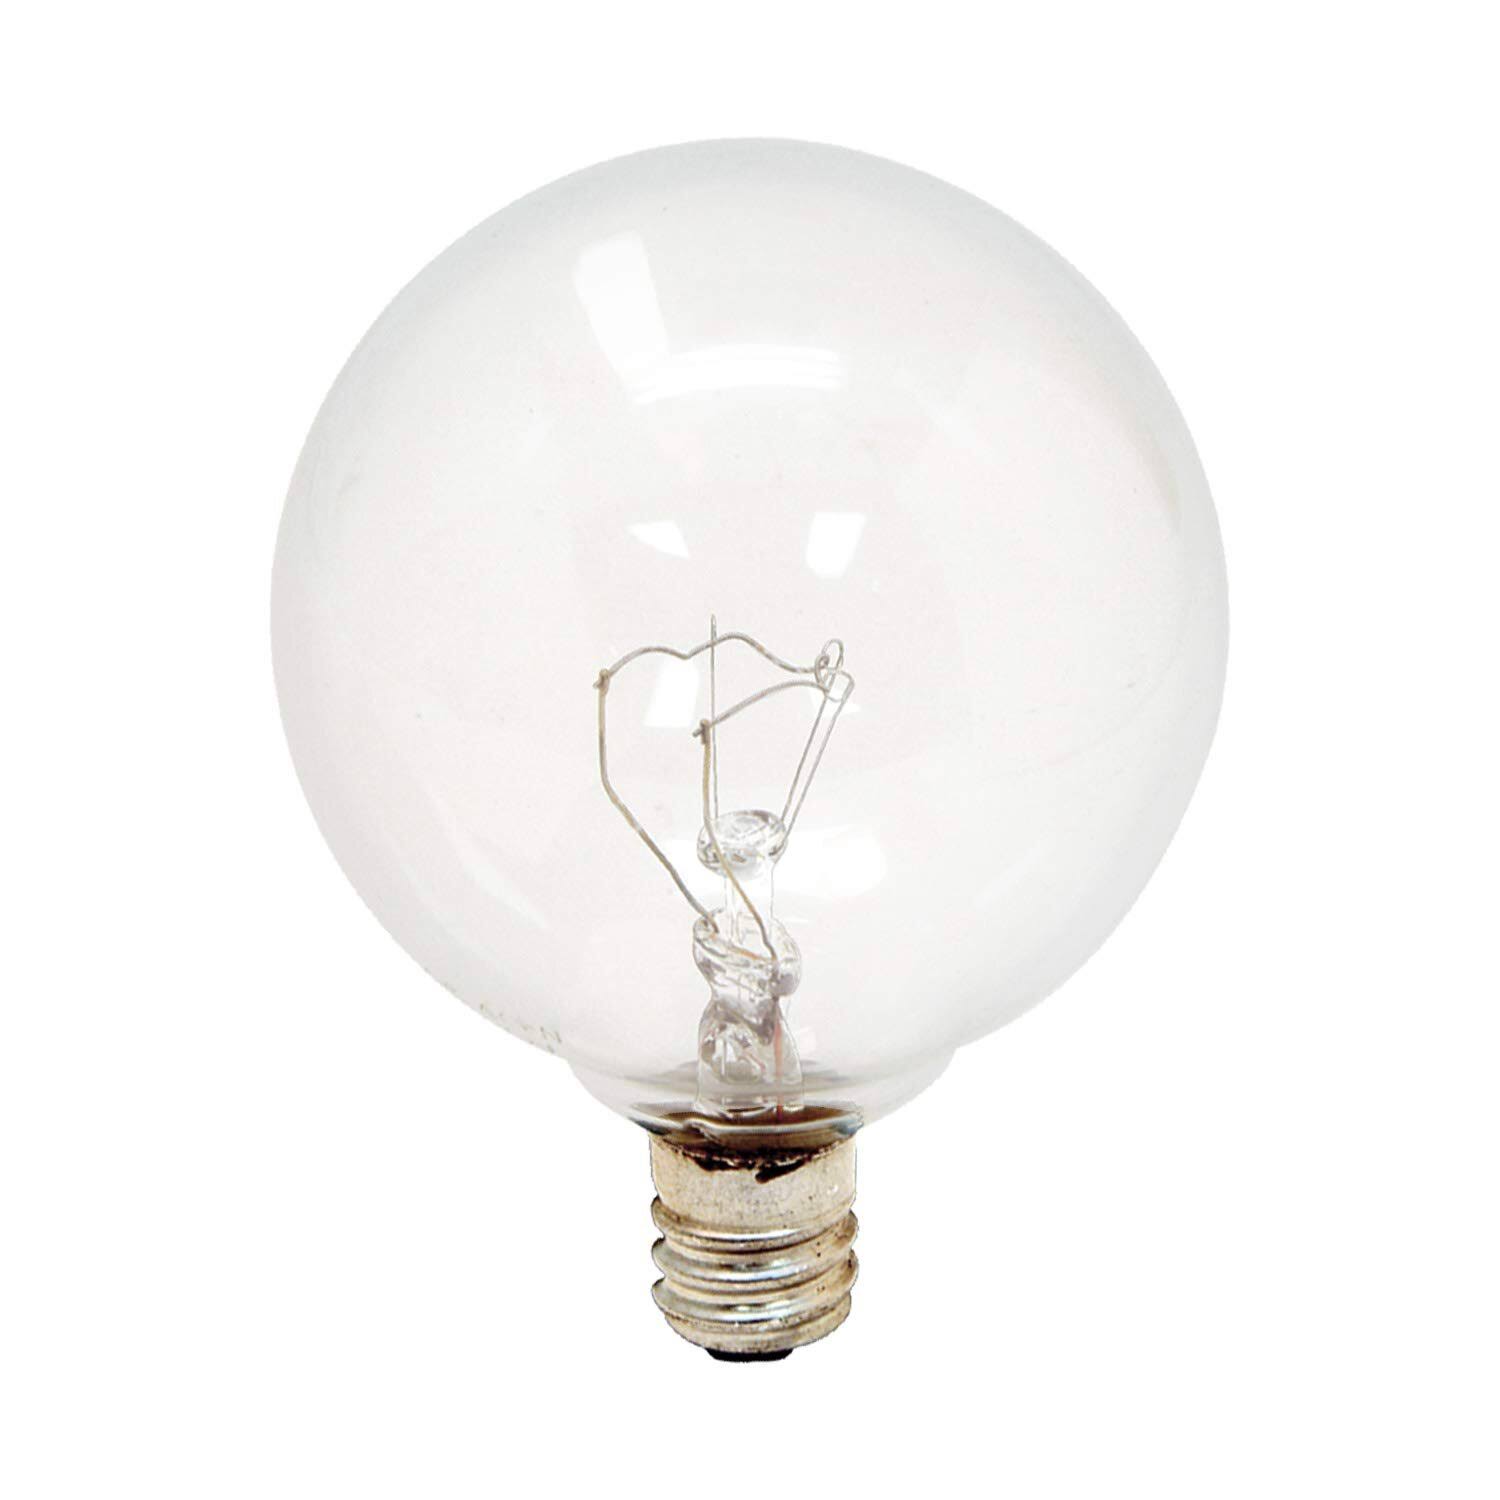 GE Lighting Light Bulb - 25W, Crystal Clear, 2 Bulbs